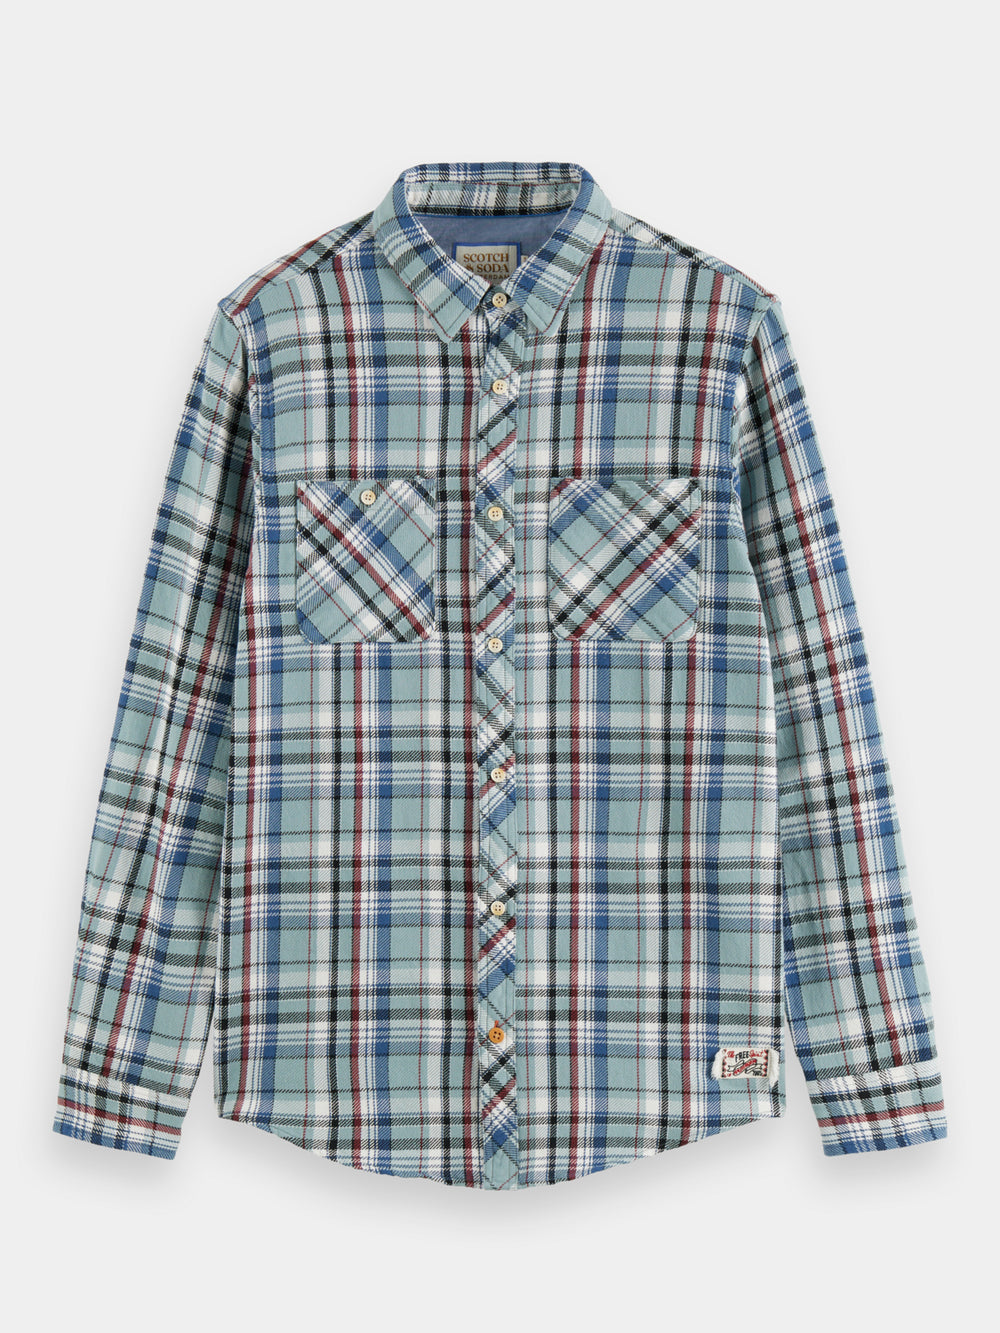 Flannel check shirt - Scotch & Soda AU